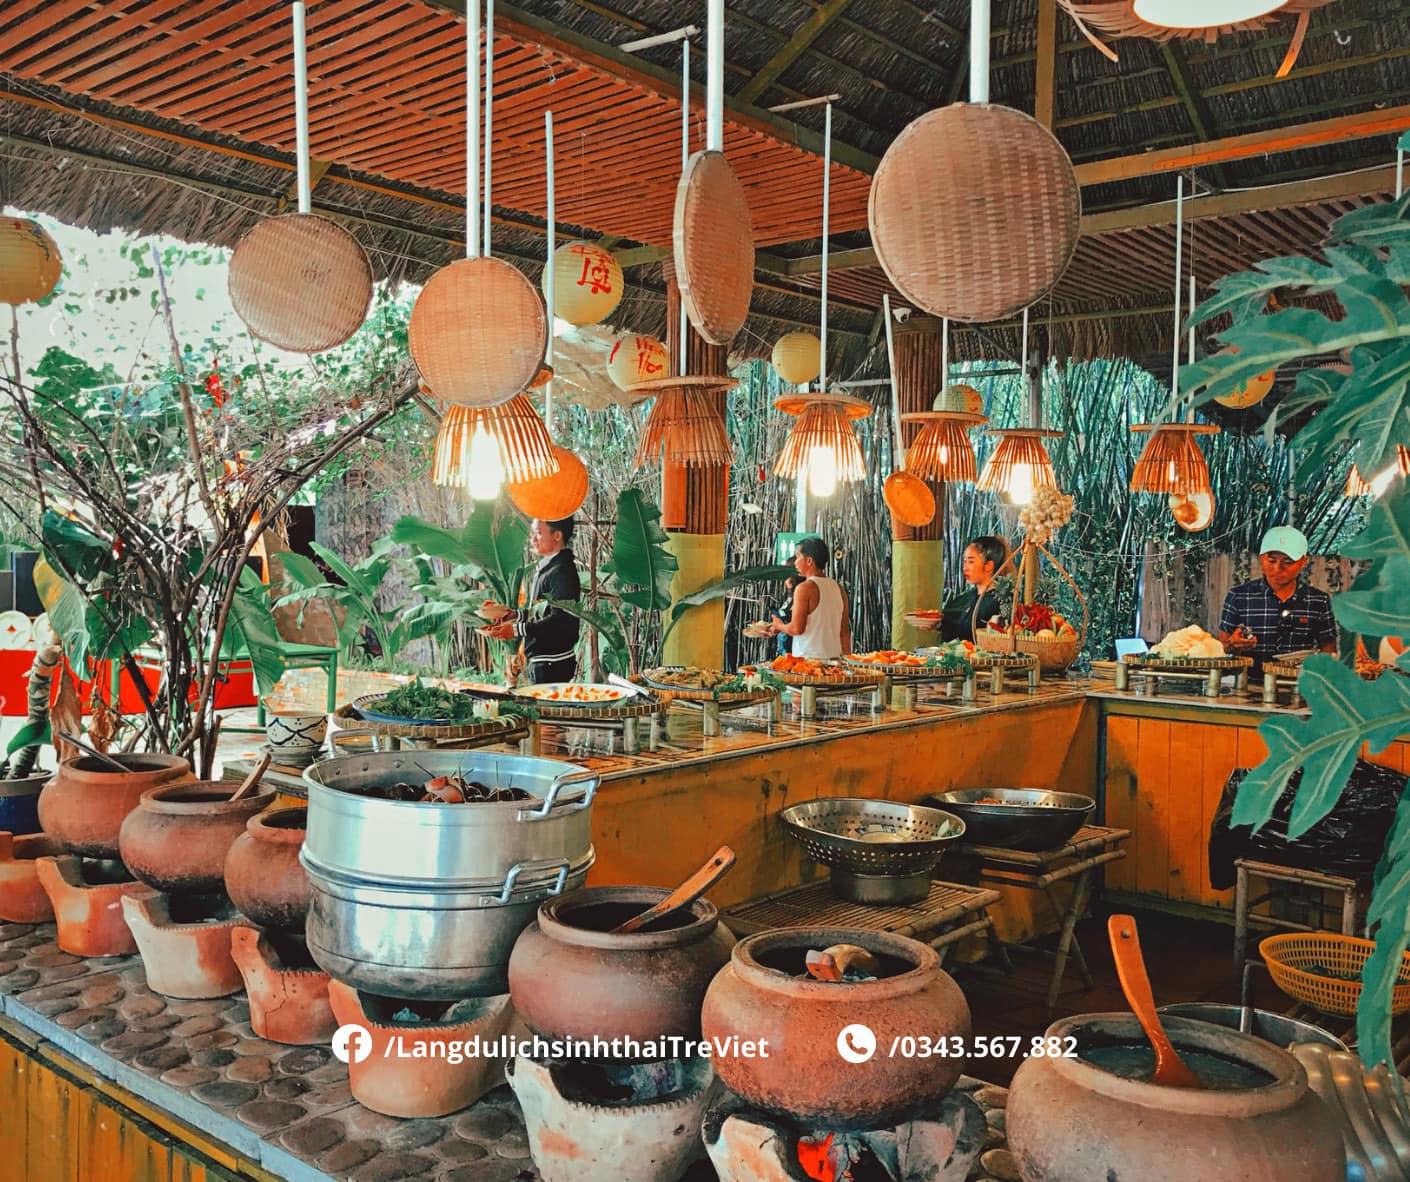 Làng du lịch sinh thái Tre Việt - The Bamboo ảnh 2